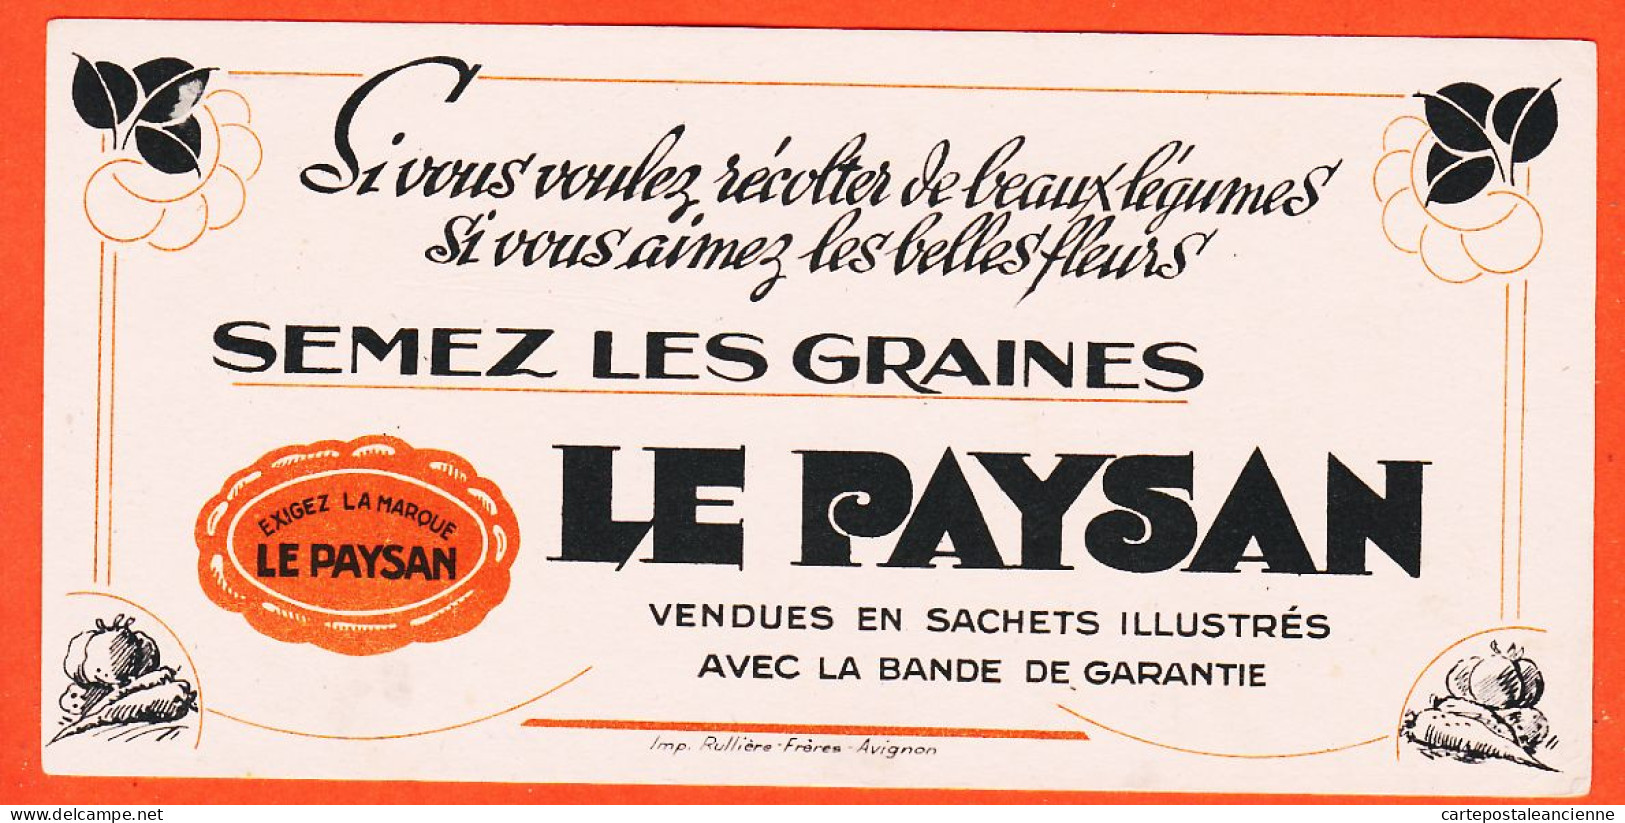 06247 / Exigez La Marque LE PAYSAN Semez Les Graines Imprimerie RULLIERE Avignon Buvard  Dim 20x9.8 - Landwirtschaft